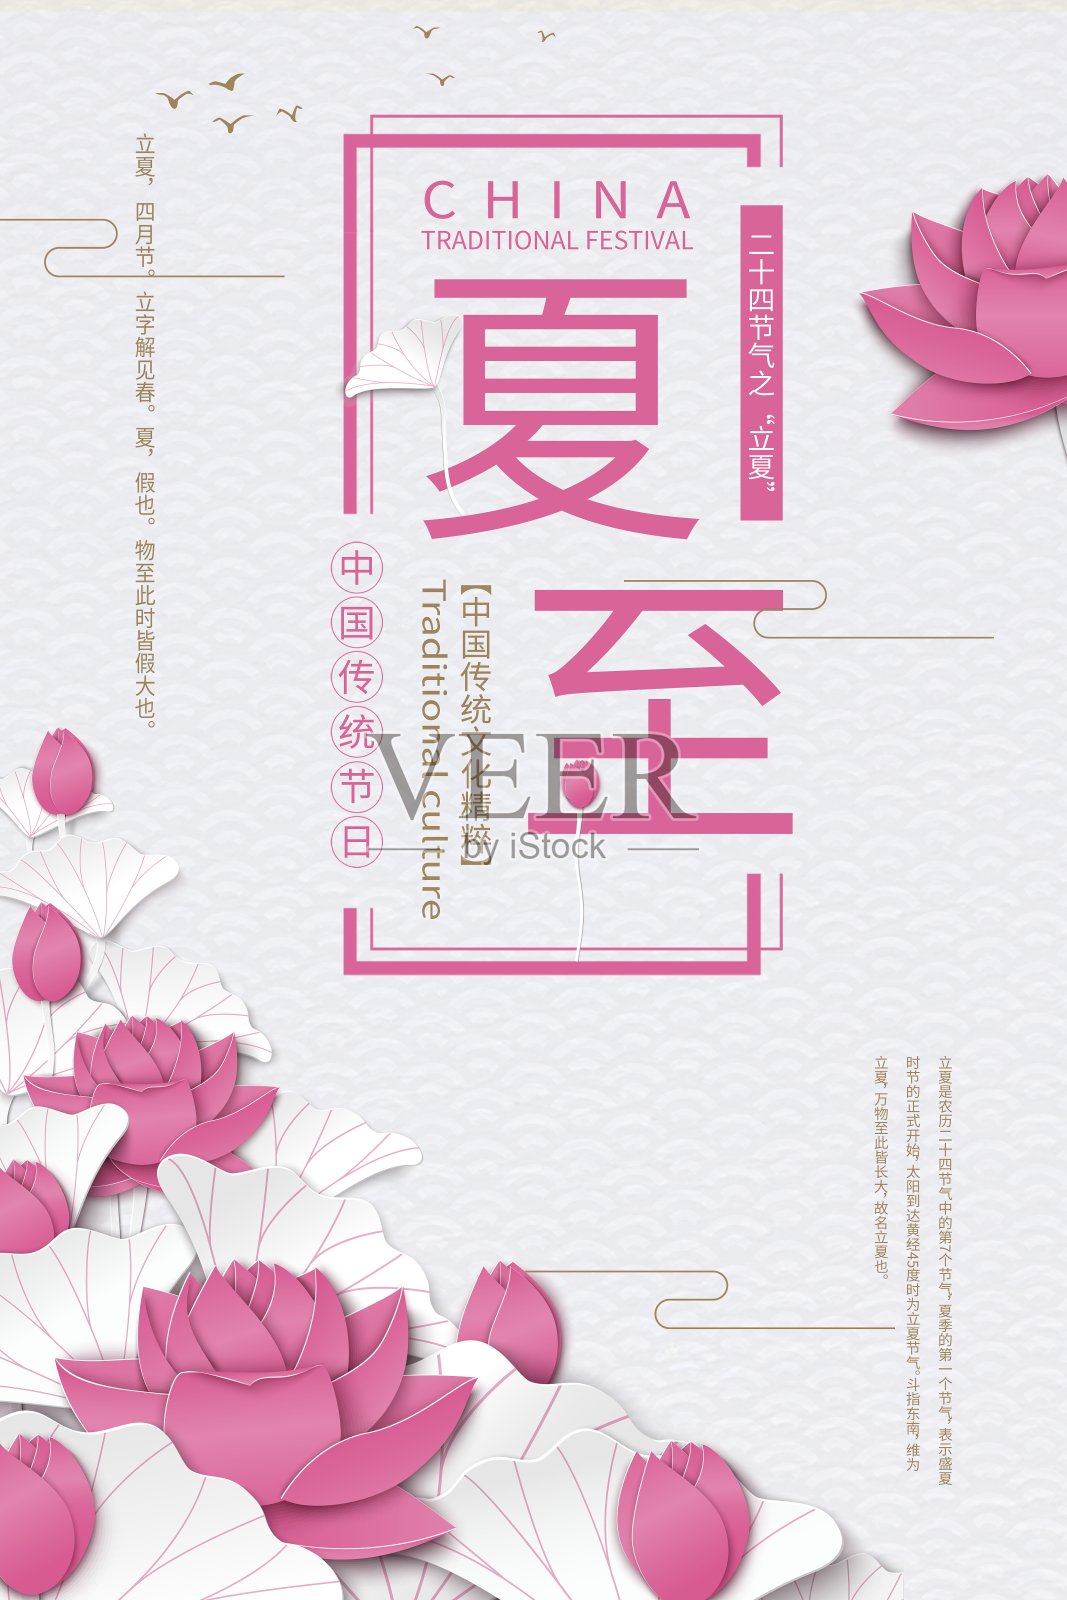 简约中国风夏至24节气传统节日海报设计模板素材